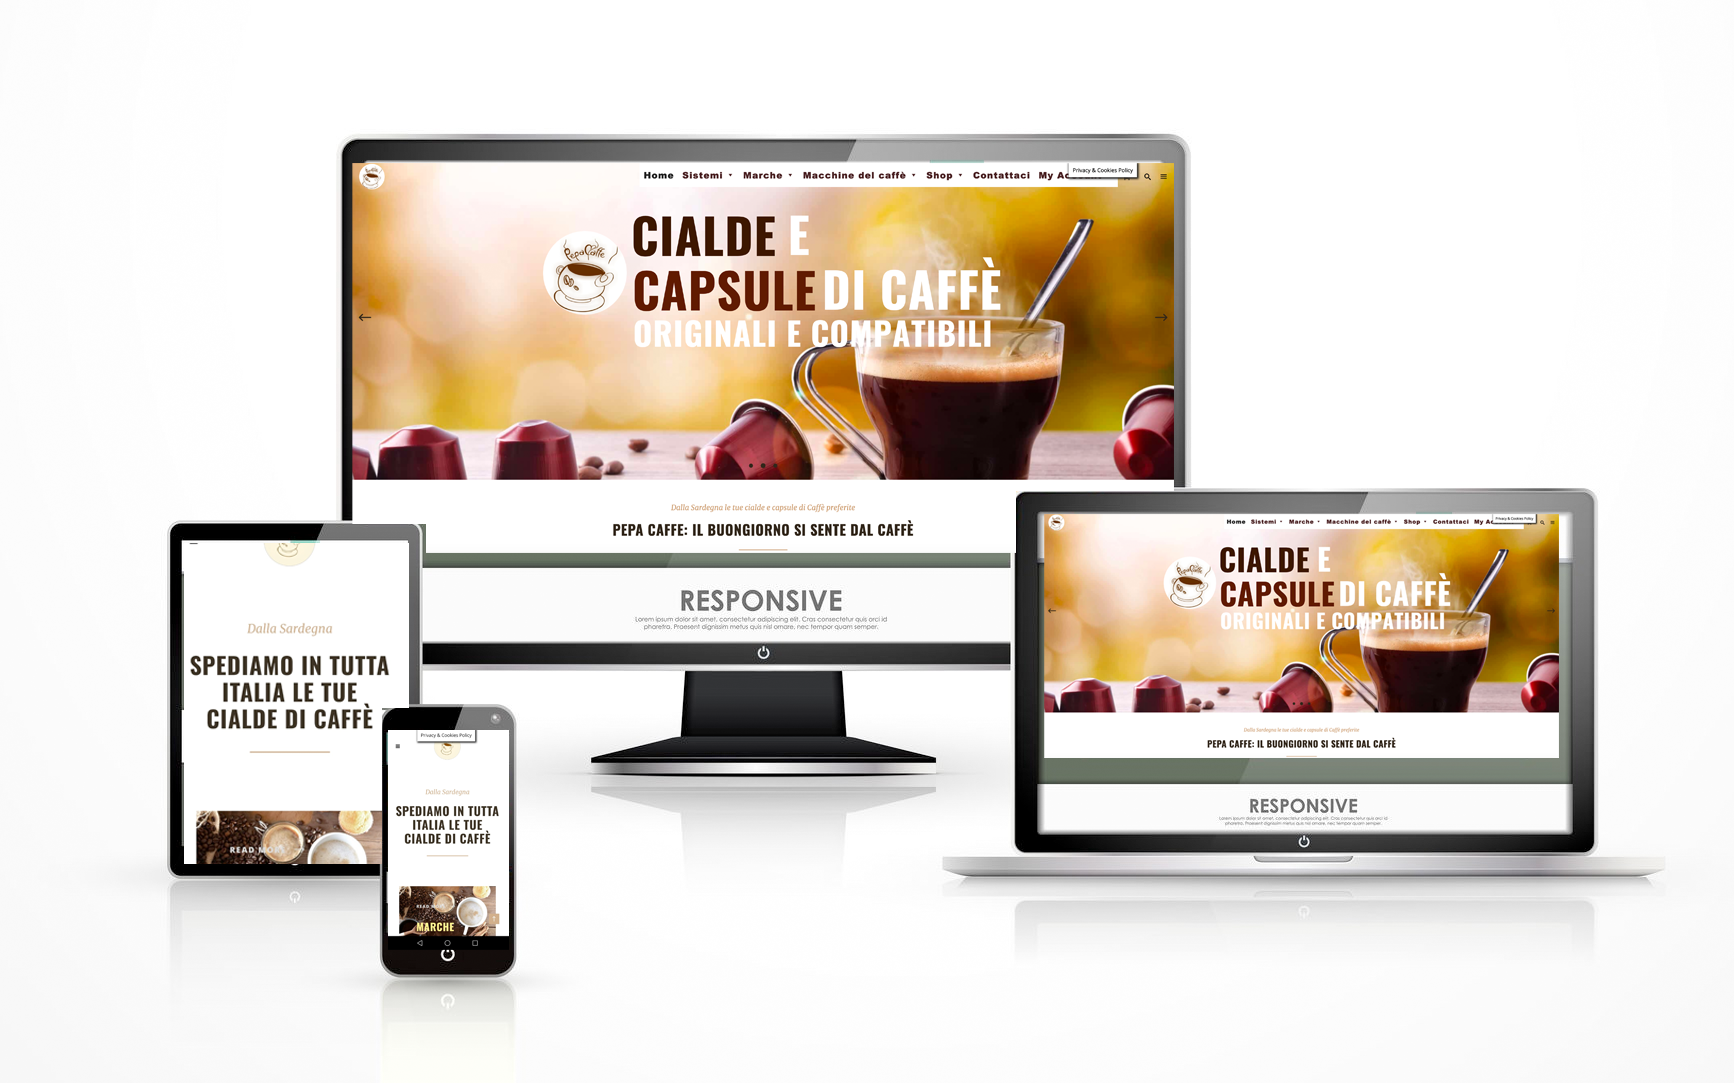 pepa caffe vendita online